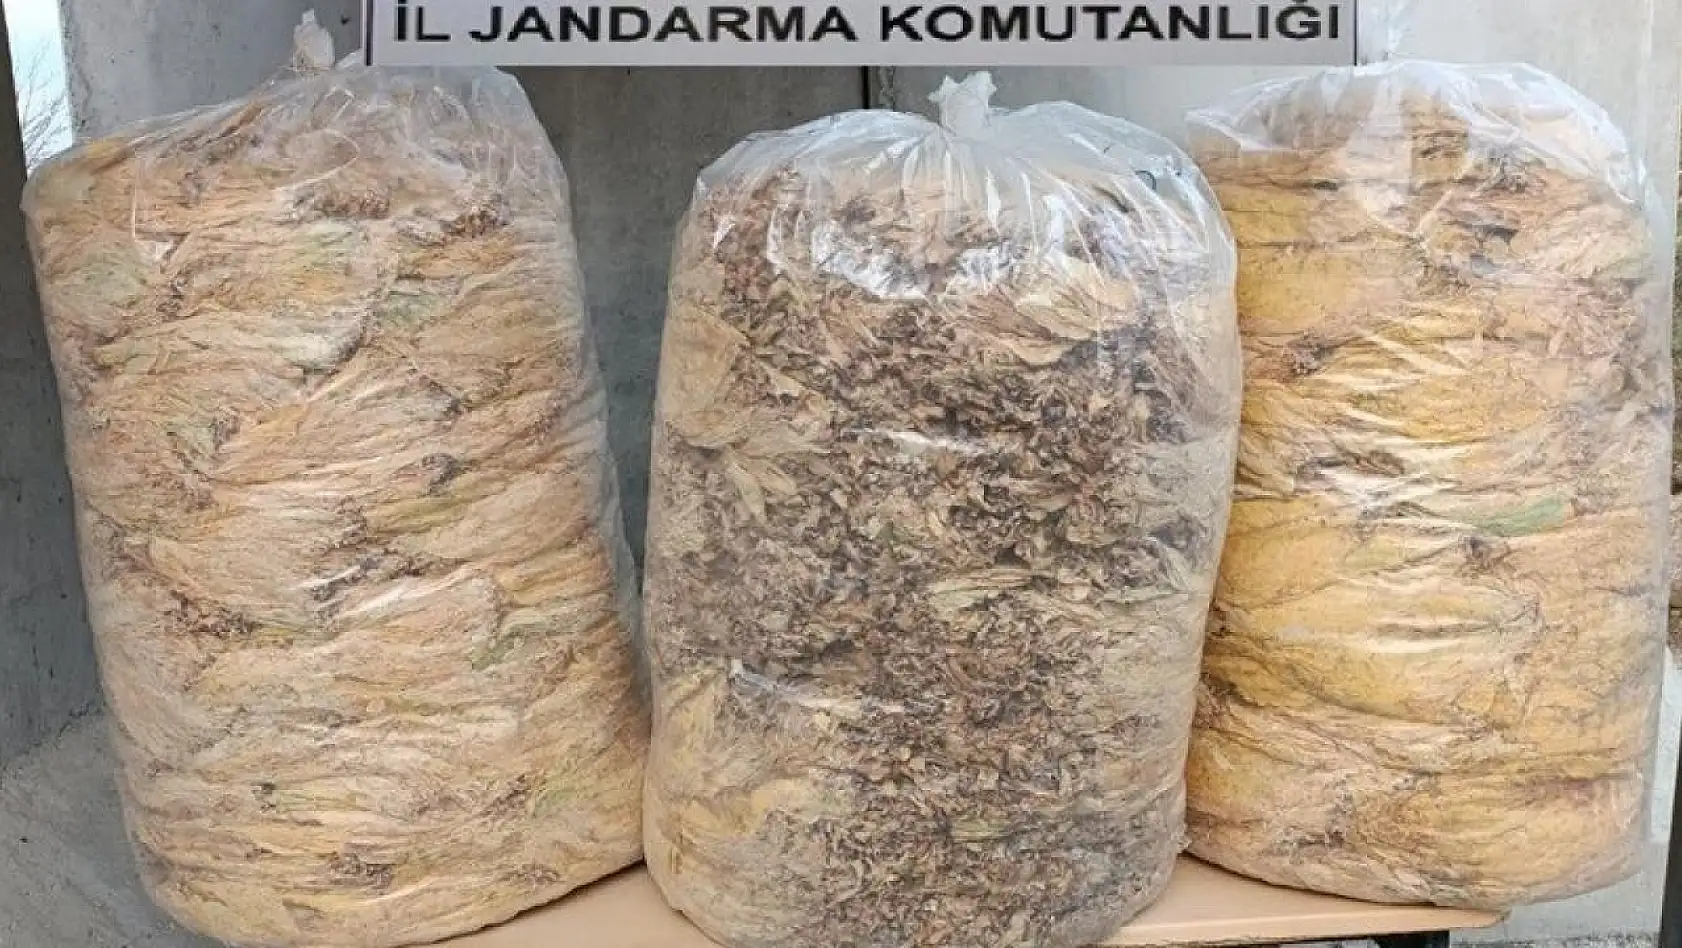 Bingöl'de 150 kilo yaprak tütün ele geçirildi